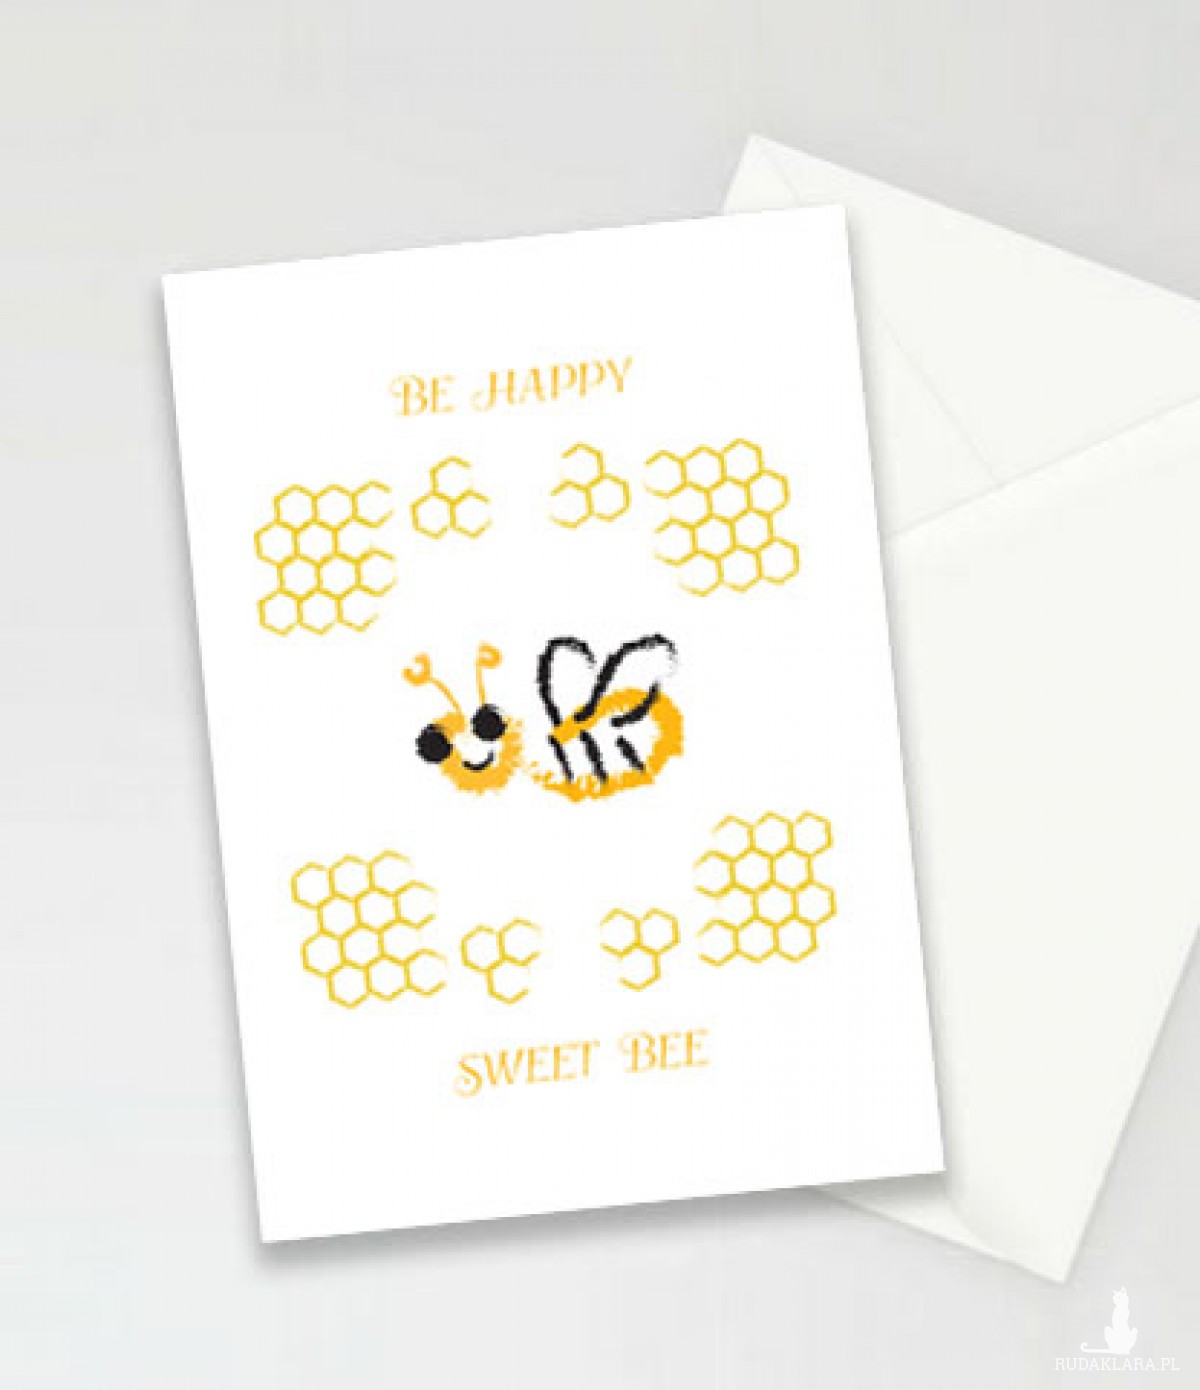 kartka z pszczółką, kartka bez życzeń, pszczółka kartka, kartki dla dzieci, zaproszenia dla dzieci, fajne kartki, śmieszne kartki, podziękowania, zaproszenie